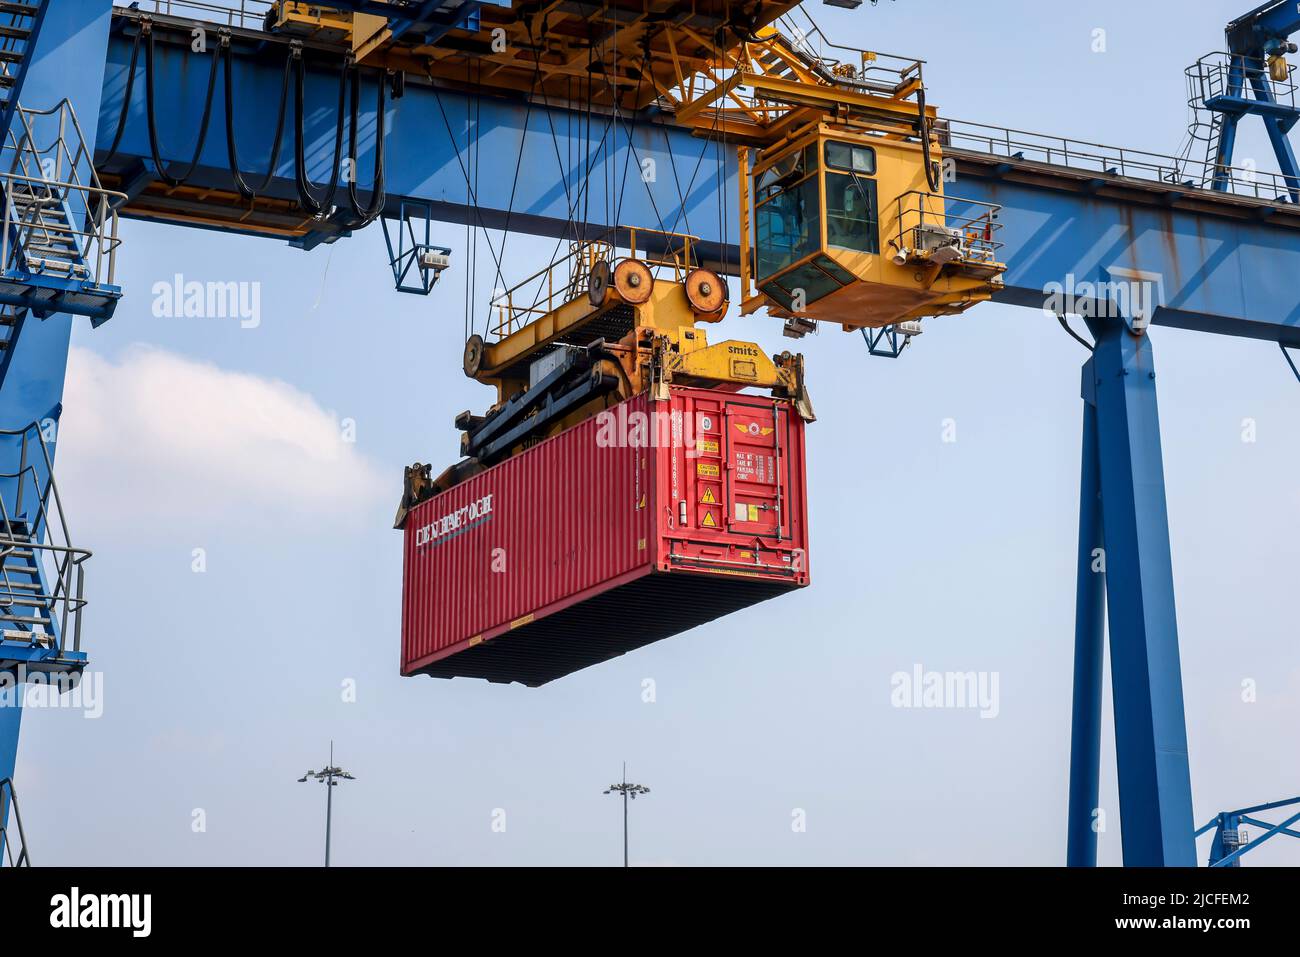 Duisburg, Ruhrgebiet, Nordrhein-Westfalen, Deutschland - Container im Duisburger Hafen verbindet die neue Seidenstraße den europäischen Binnenhafen Duisburg mit den chinesischen Metropolen, die Güterzüge benötigen für die direkte Verbindung 16 Tage. Stockfoto